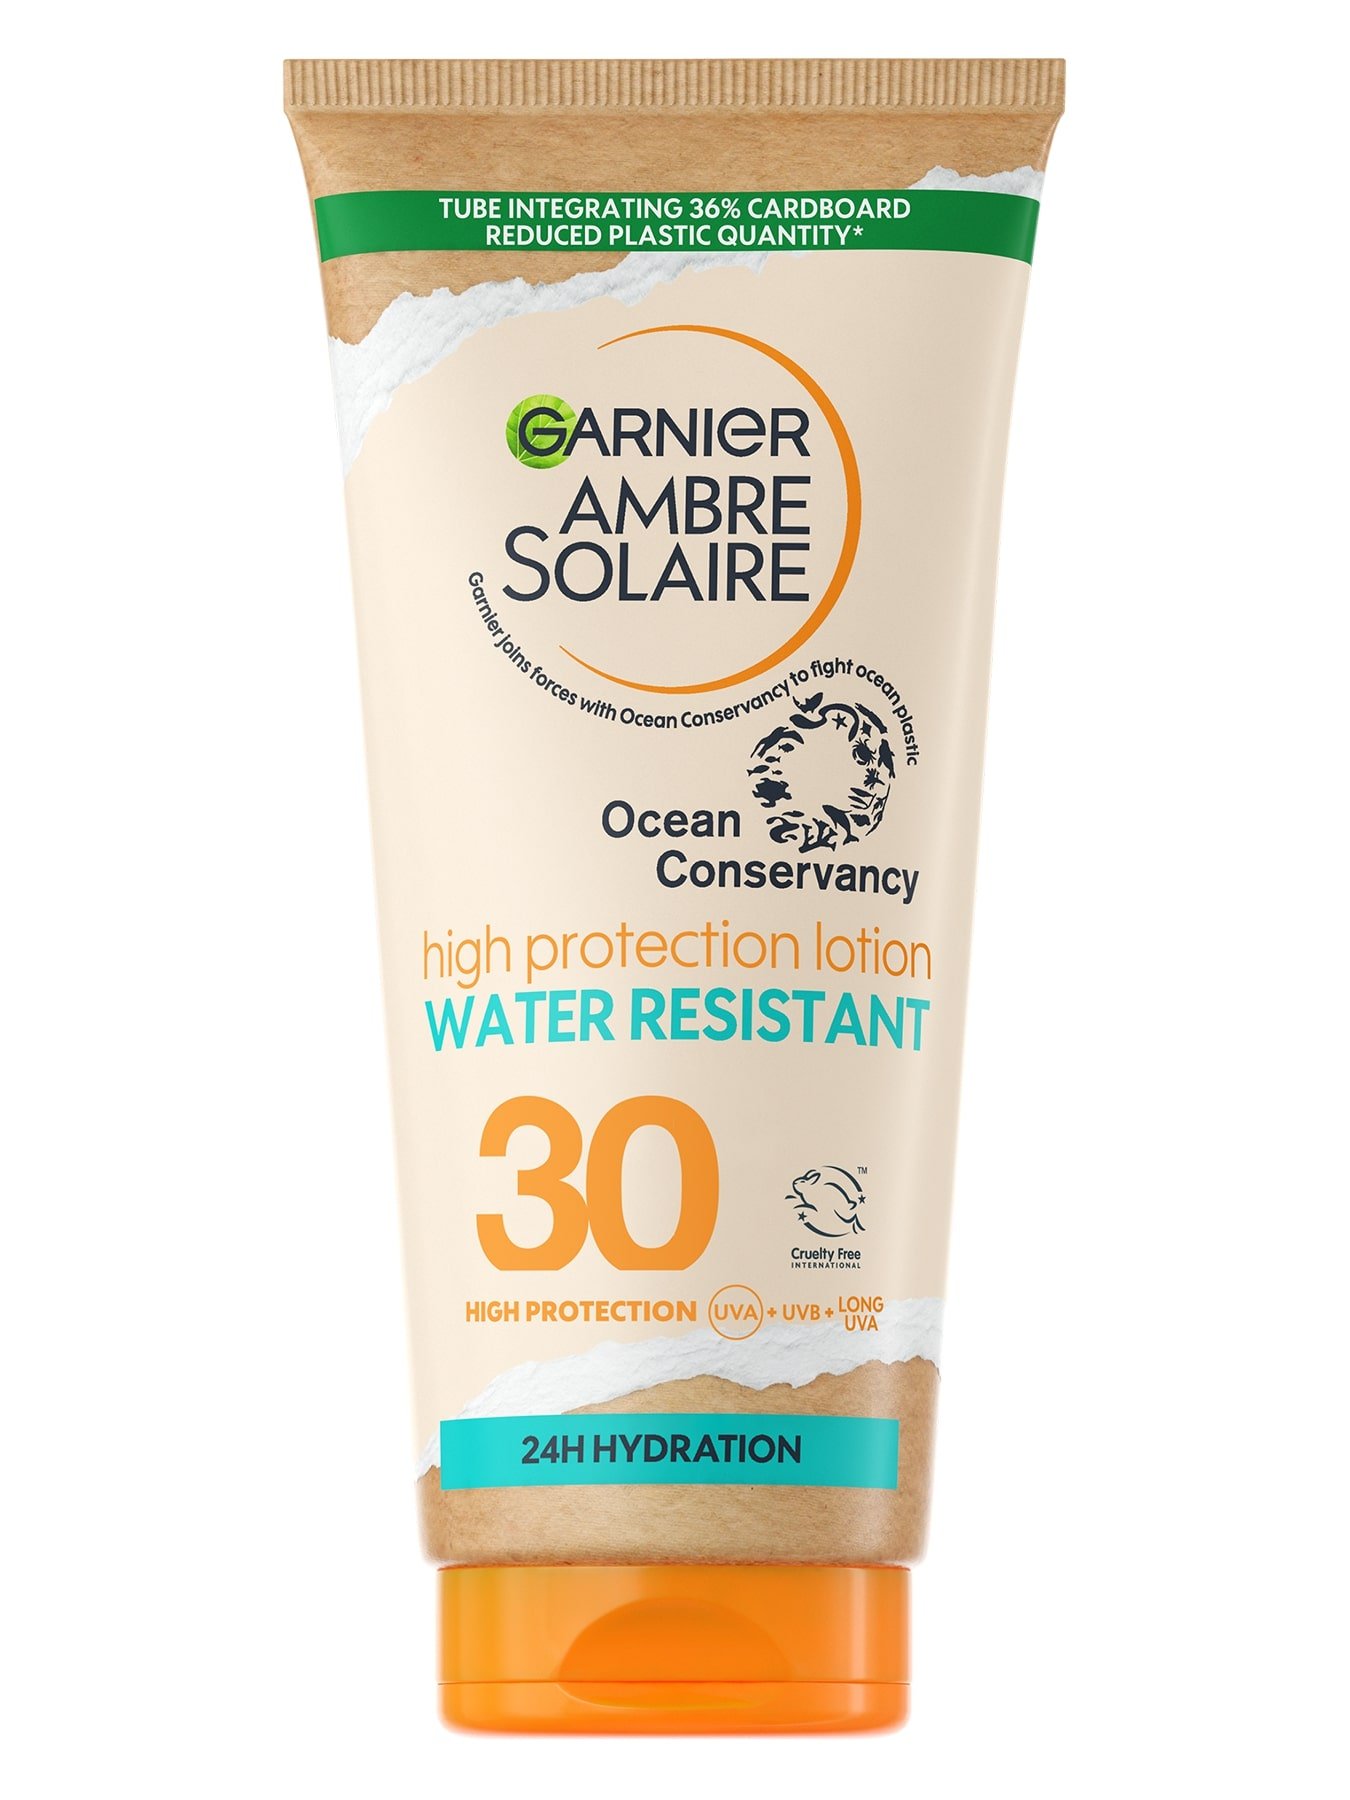  Garnier Ambre Solaire Ocean Protect mleko SPF30 